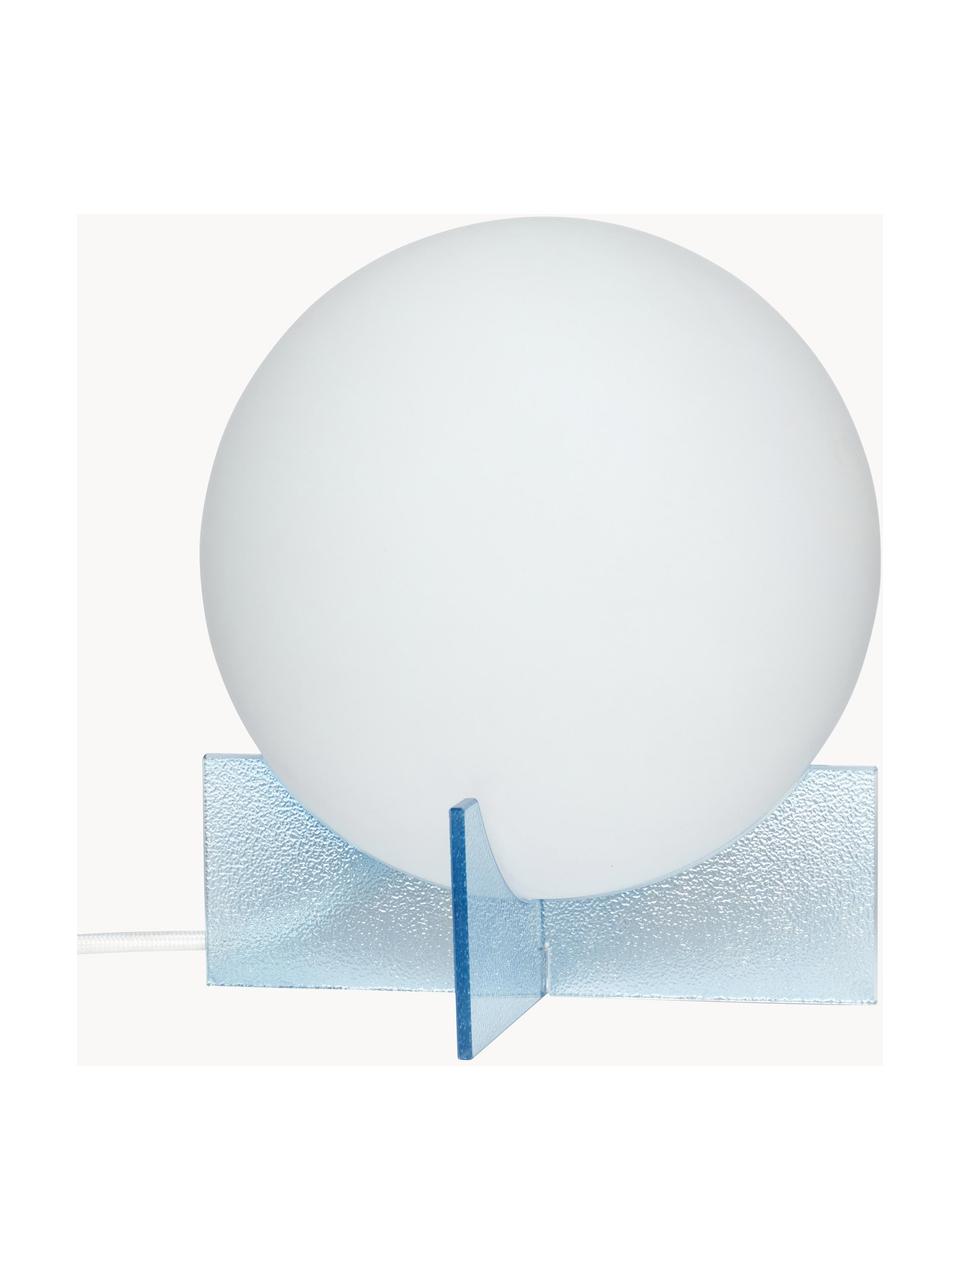 Malá kulatá stolní lampa Moon, Bílá, světle modrá, Ø 20 cm, V 23 cm